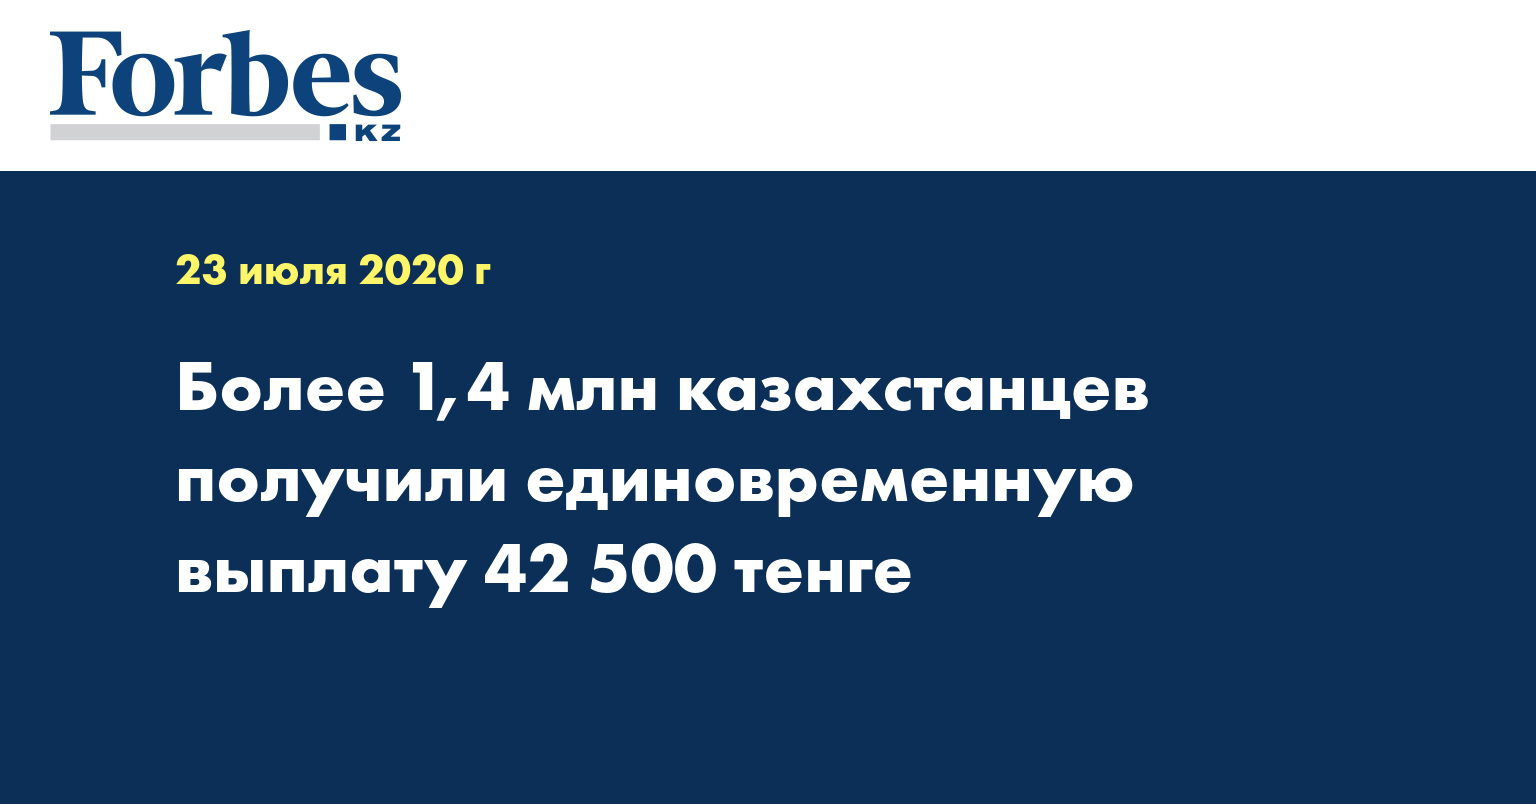 Более 1,4 млн казахстанцев получили единовременную выплату 42 500 тенге